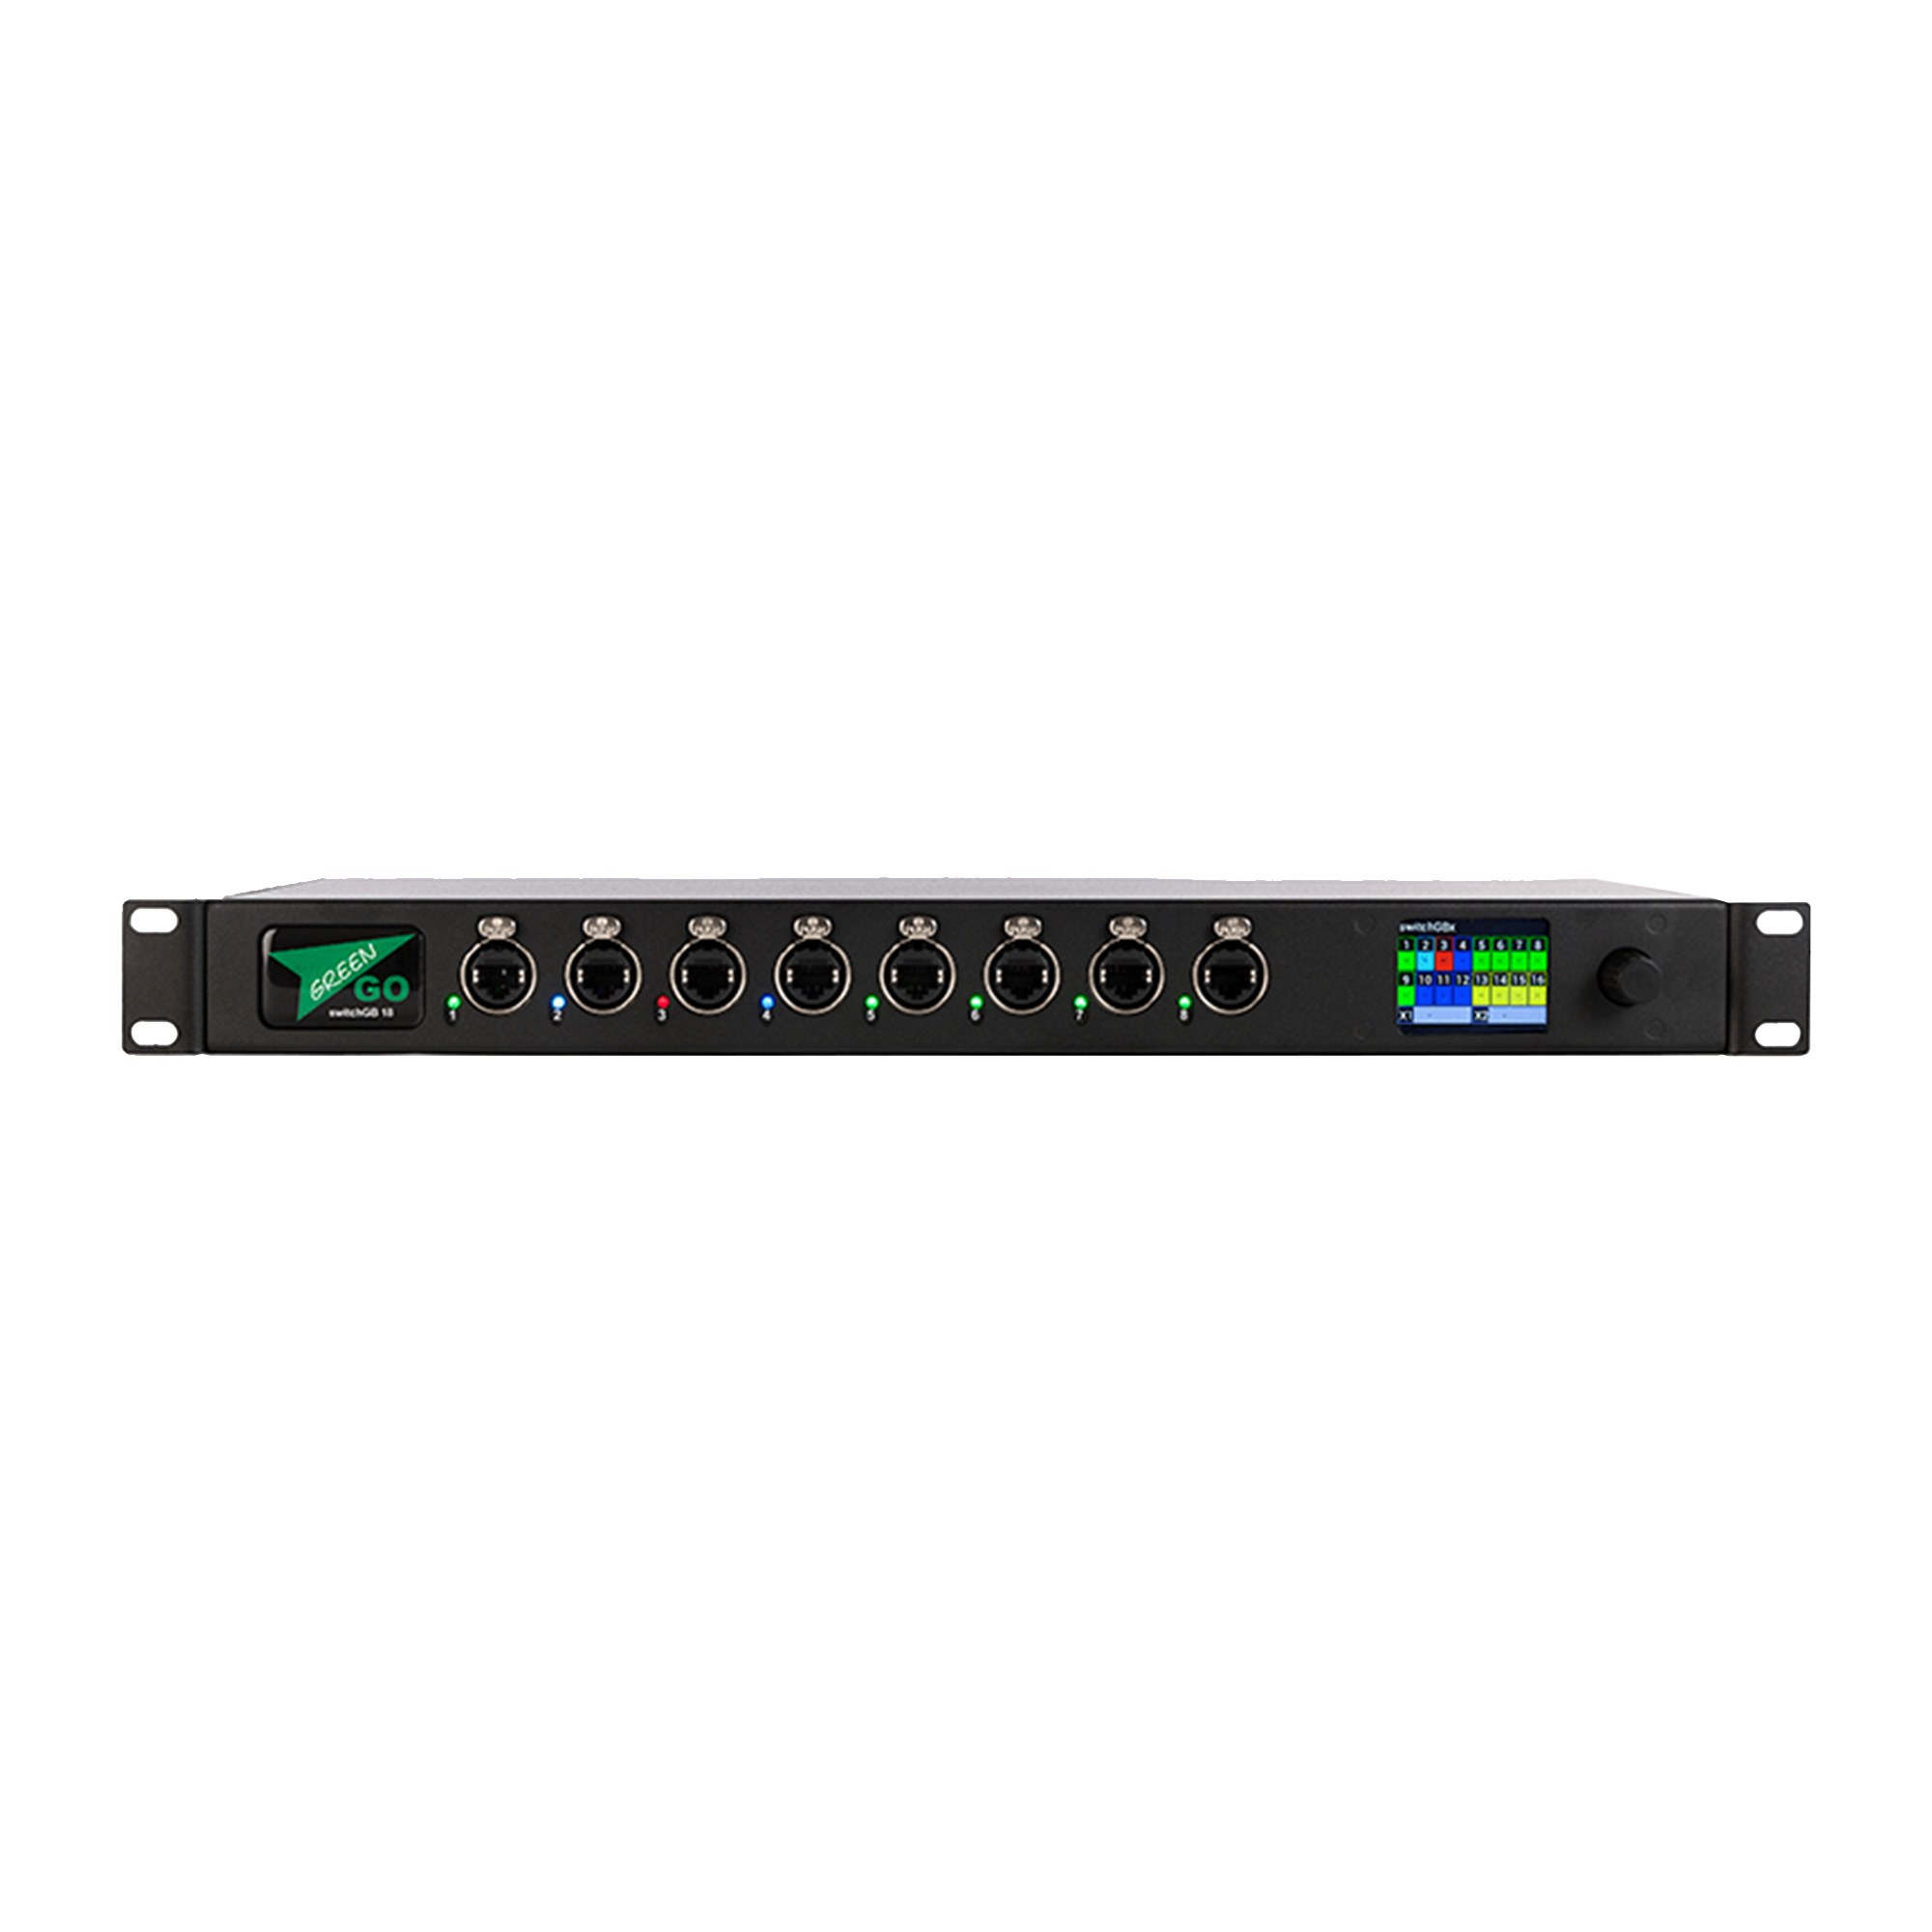 Green-GO SW18GBX 18 port gigabit switch